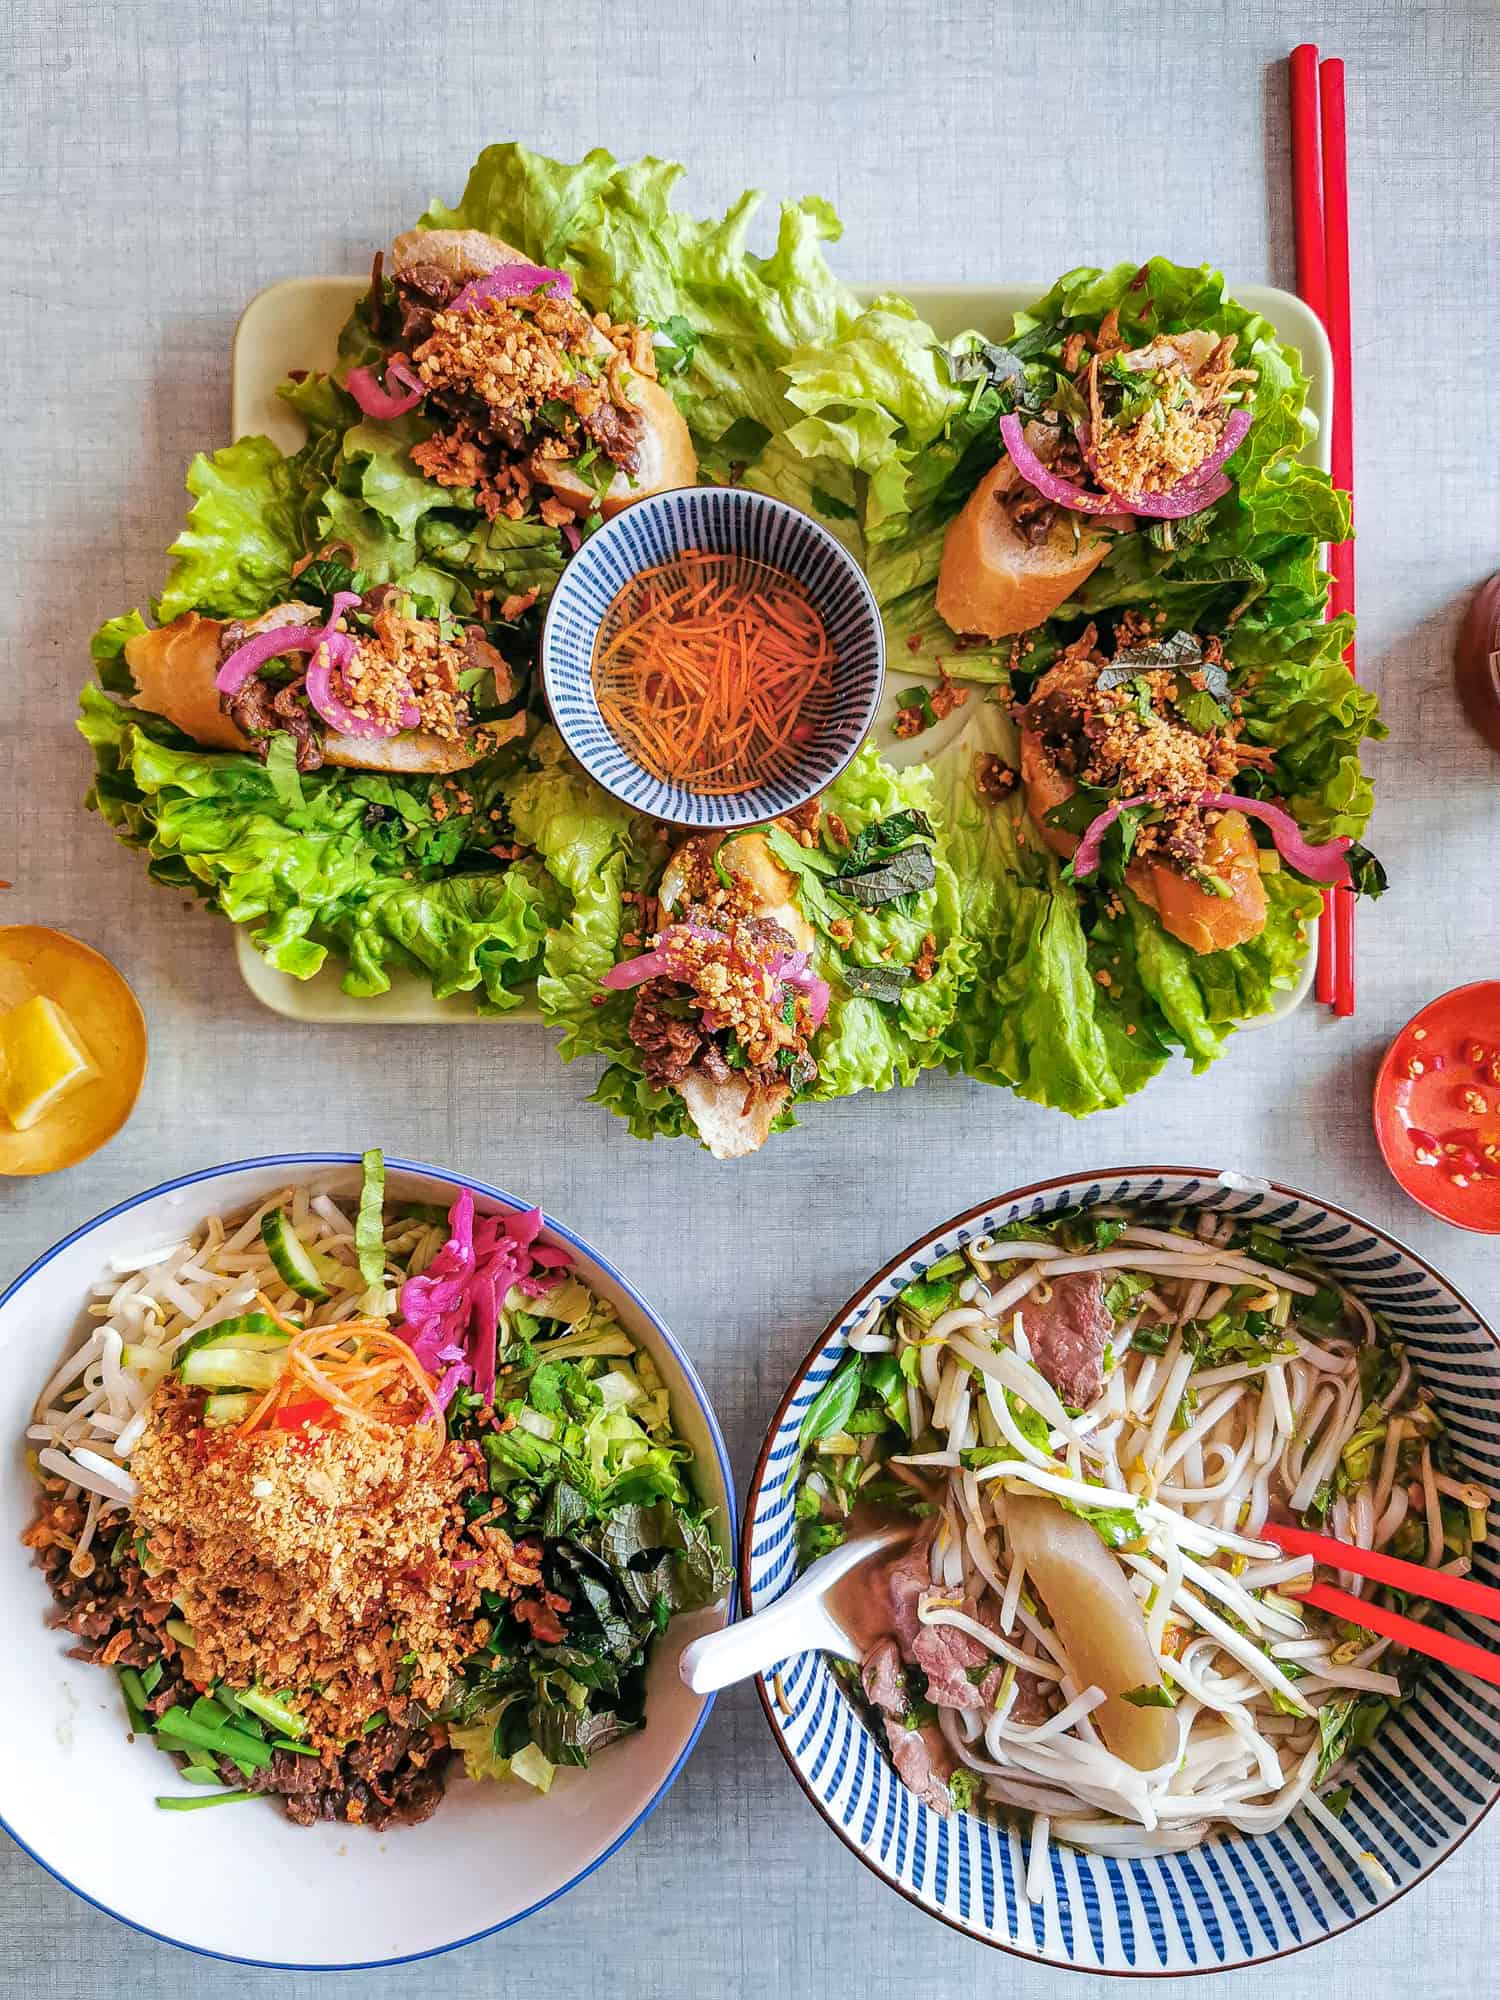 ca-phe-broc-ouest-restaurant-vietnamien-paris-14-bouiboui-24